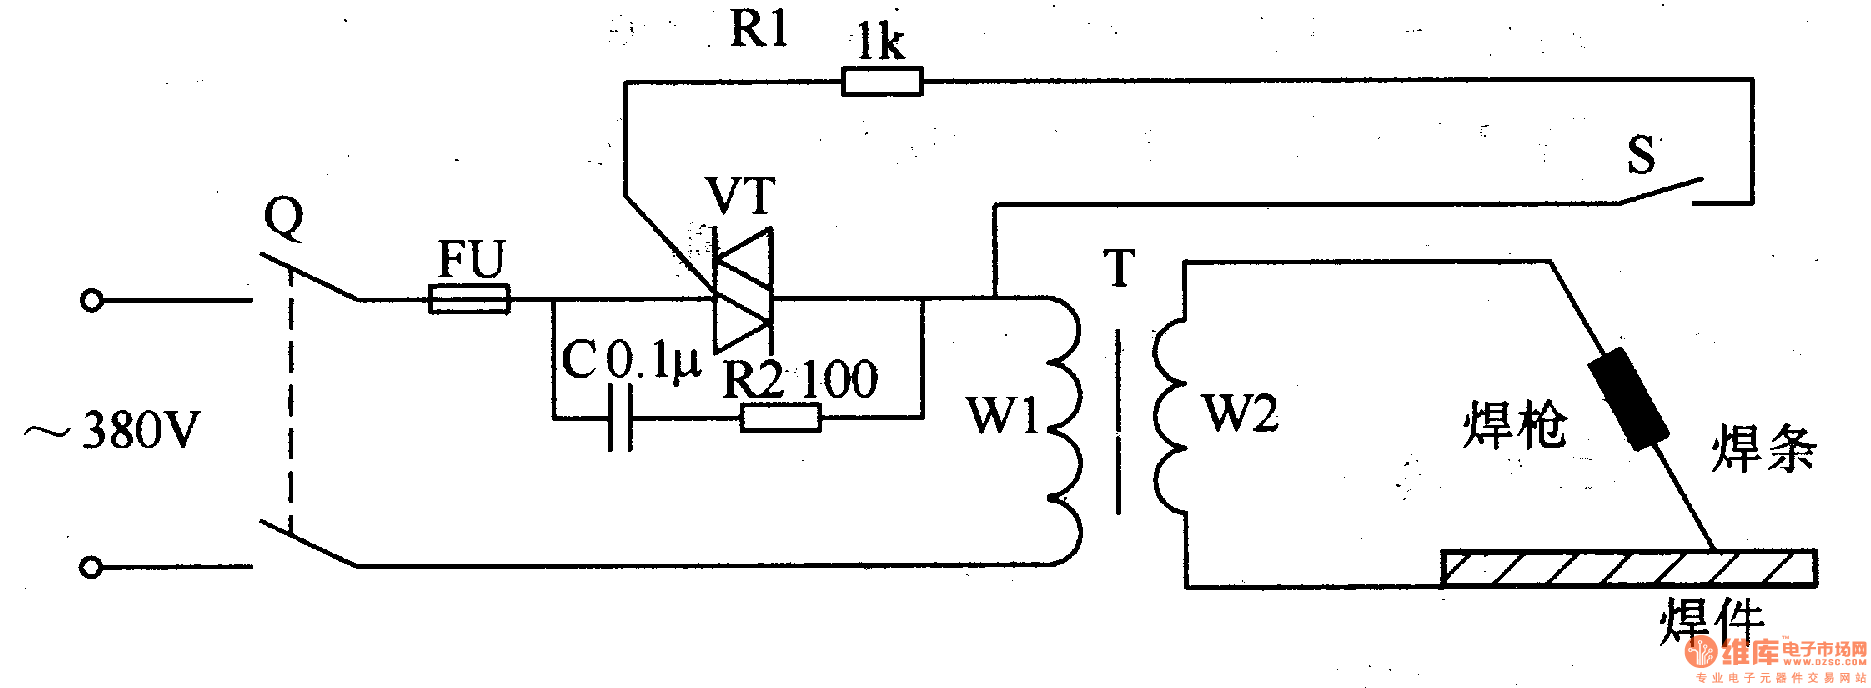 welder circuit